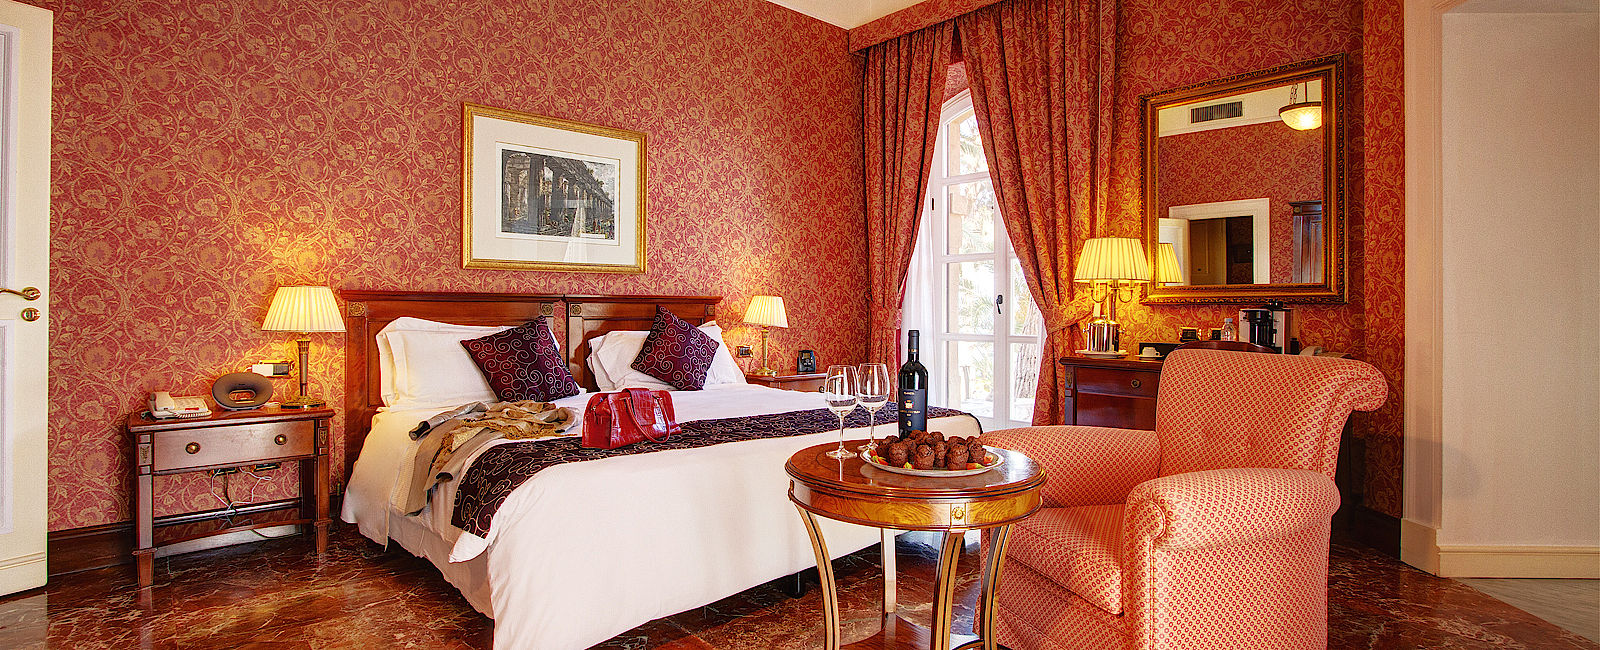 VERY SPECIAL HOTEL
 Grand Hotel Villa Igiea & Grand Hotel Poltu Quatu 
 Mediterranes Doppel 